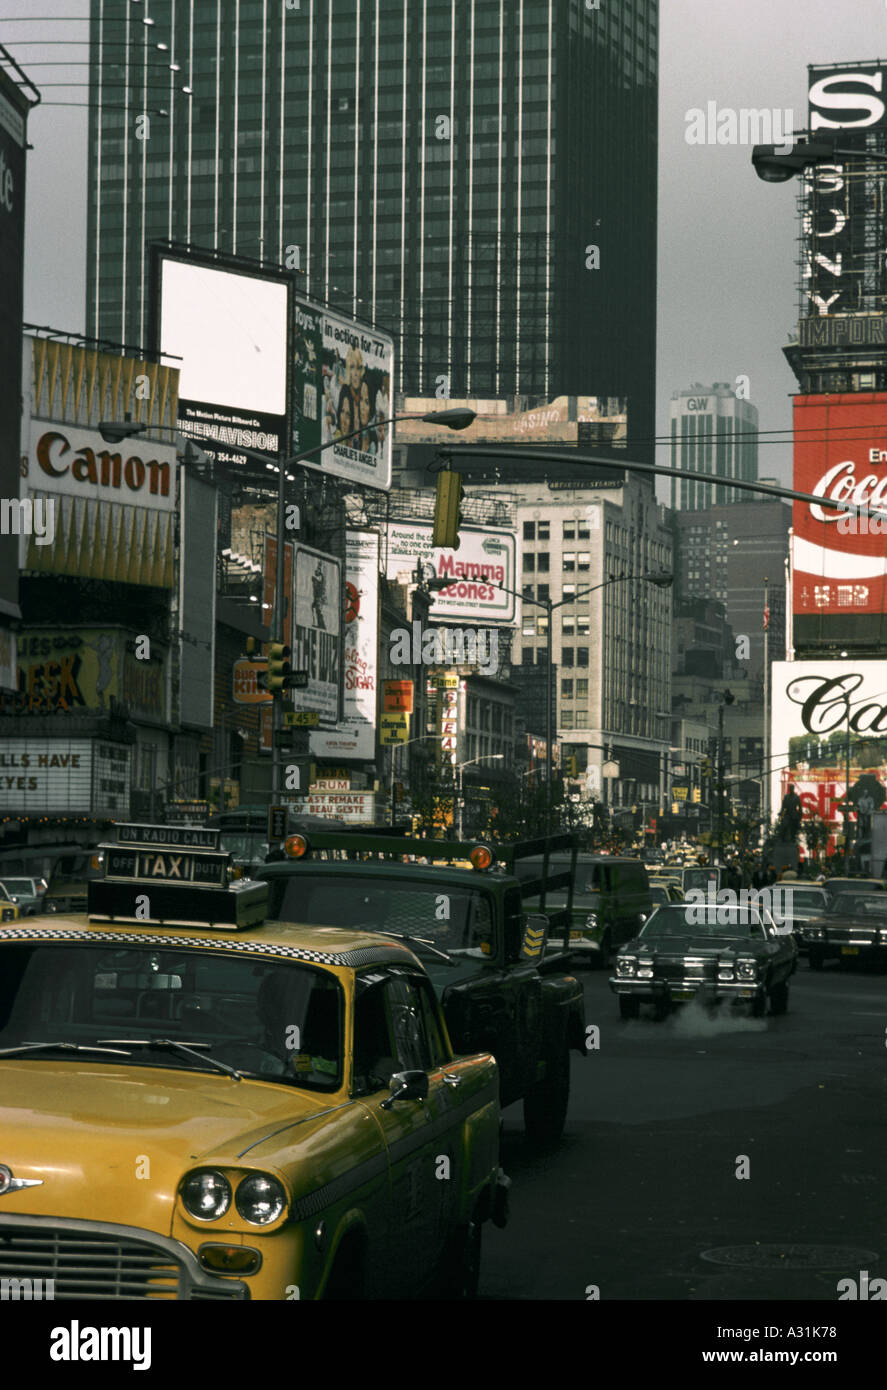 Bodenhöhe Straßenszene von Manhattan Insel New York Skyscarpers Gebäude gelben Taxi cab Verkehr Dampf steigt aus dem Autowerbung für Coca Cola Canon sony Stockfoto